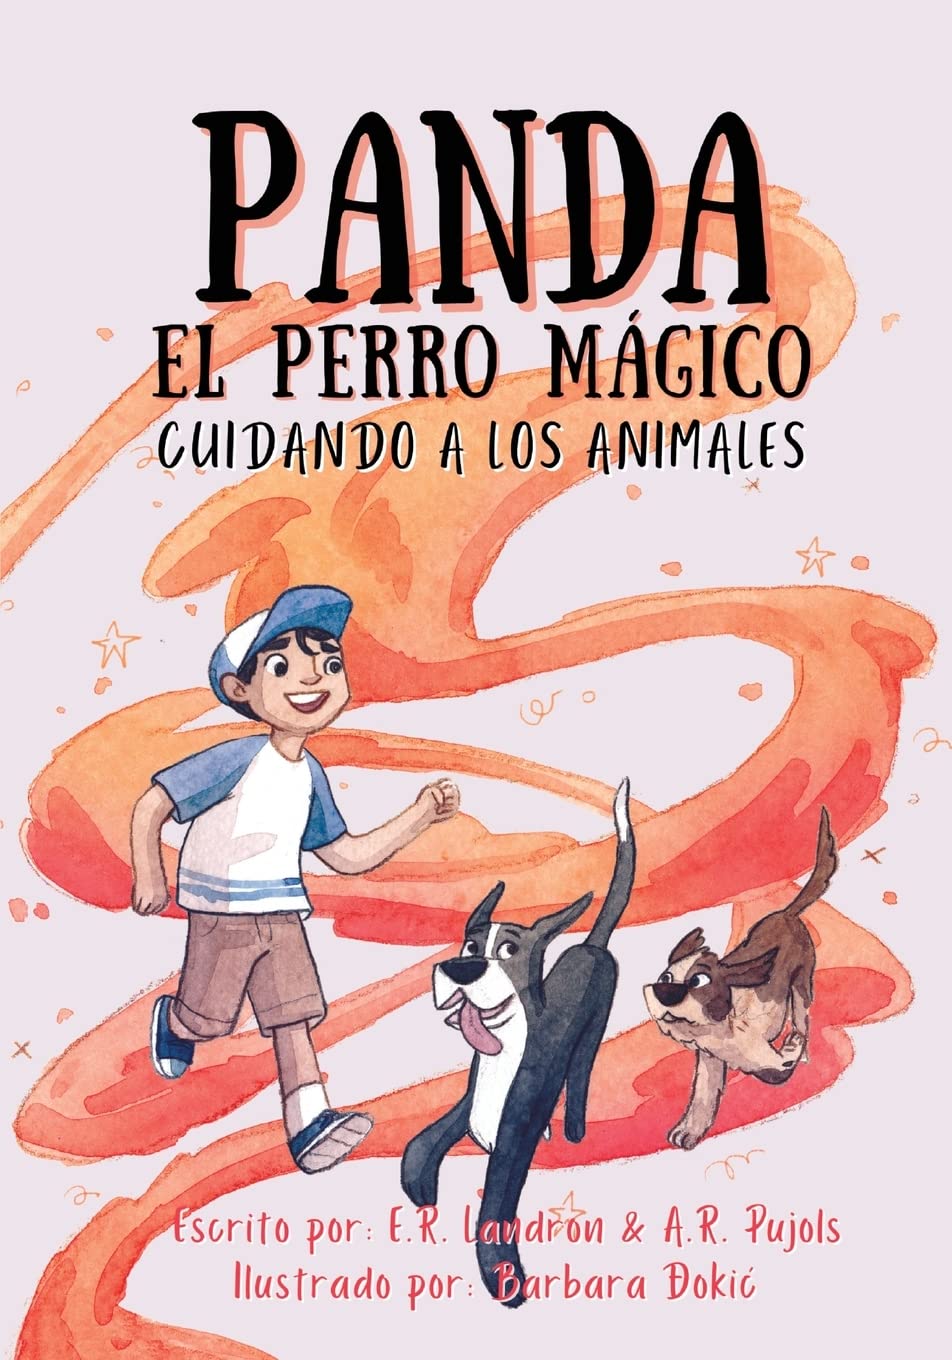 Panda El Perro Magico: Cuidando A Los Animales -  Er Landron